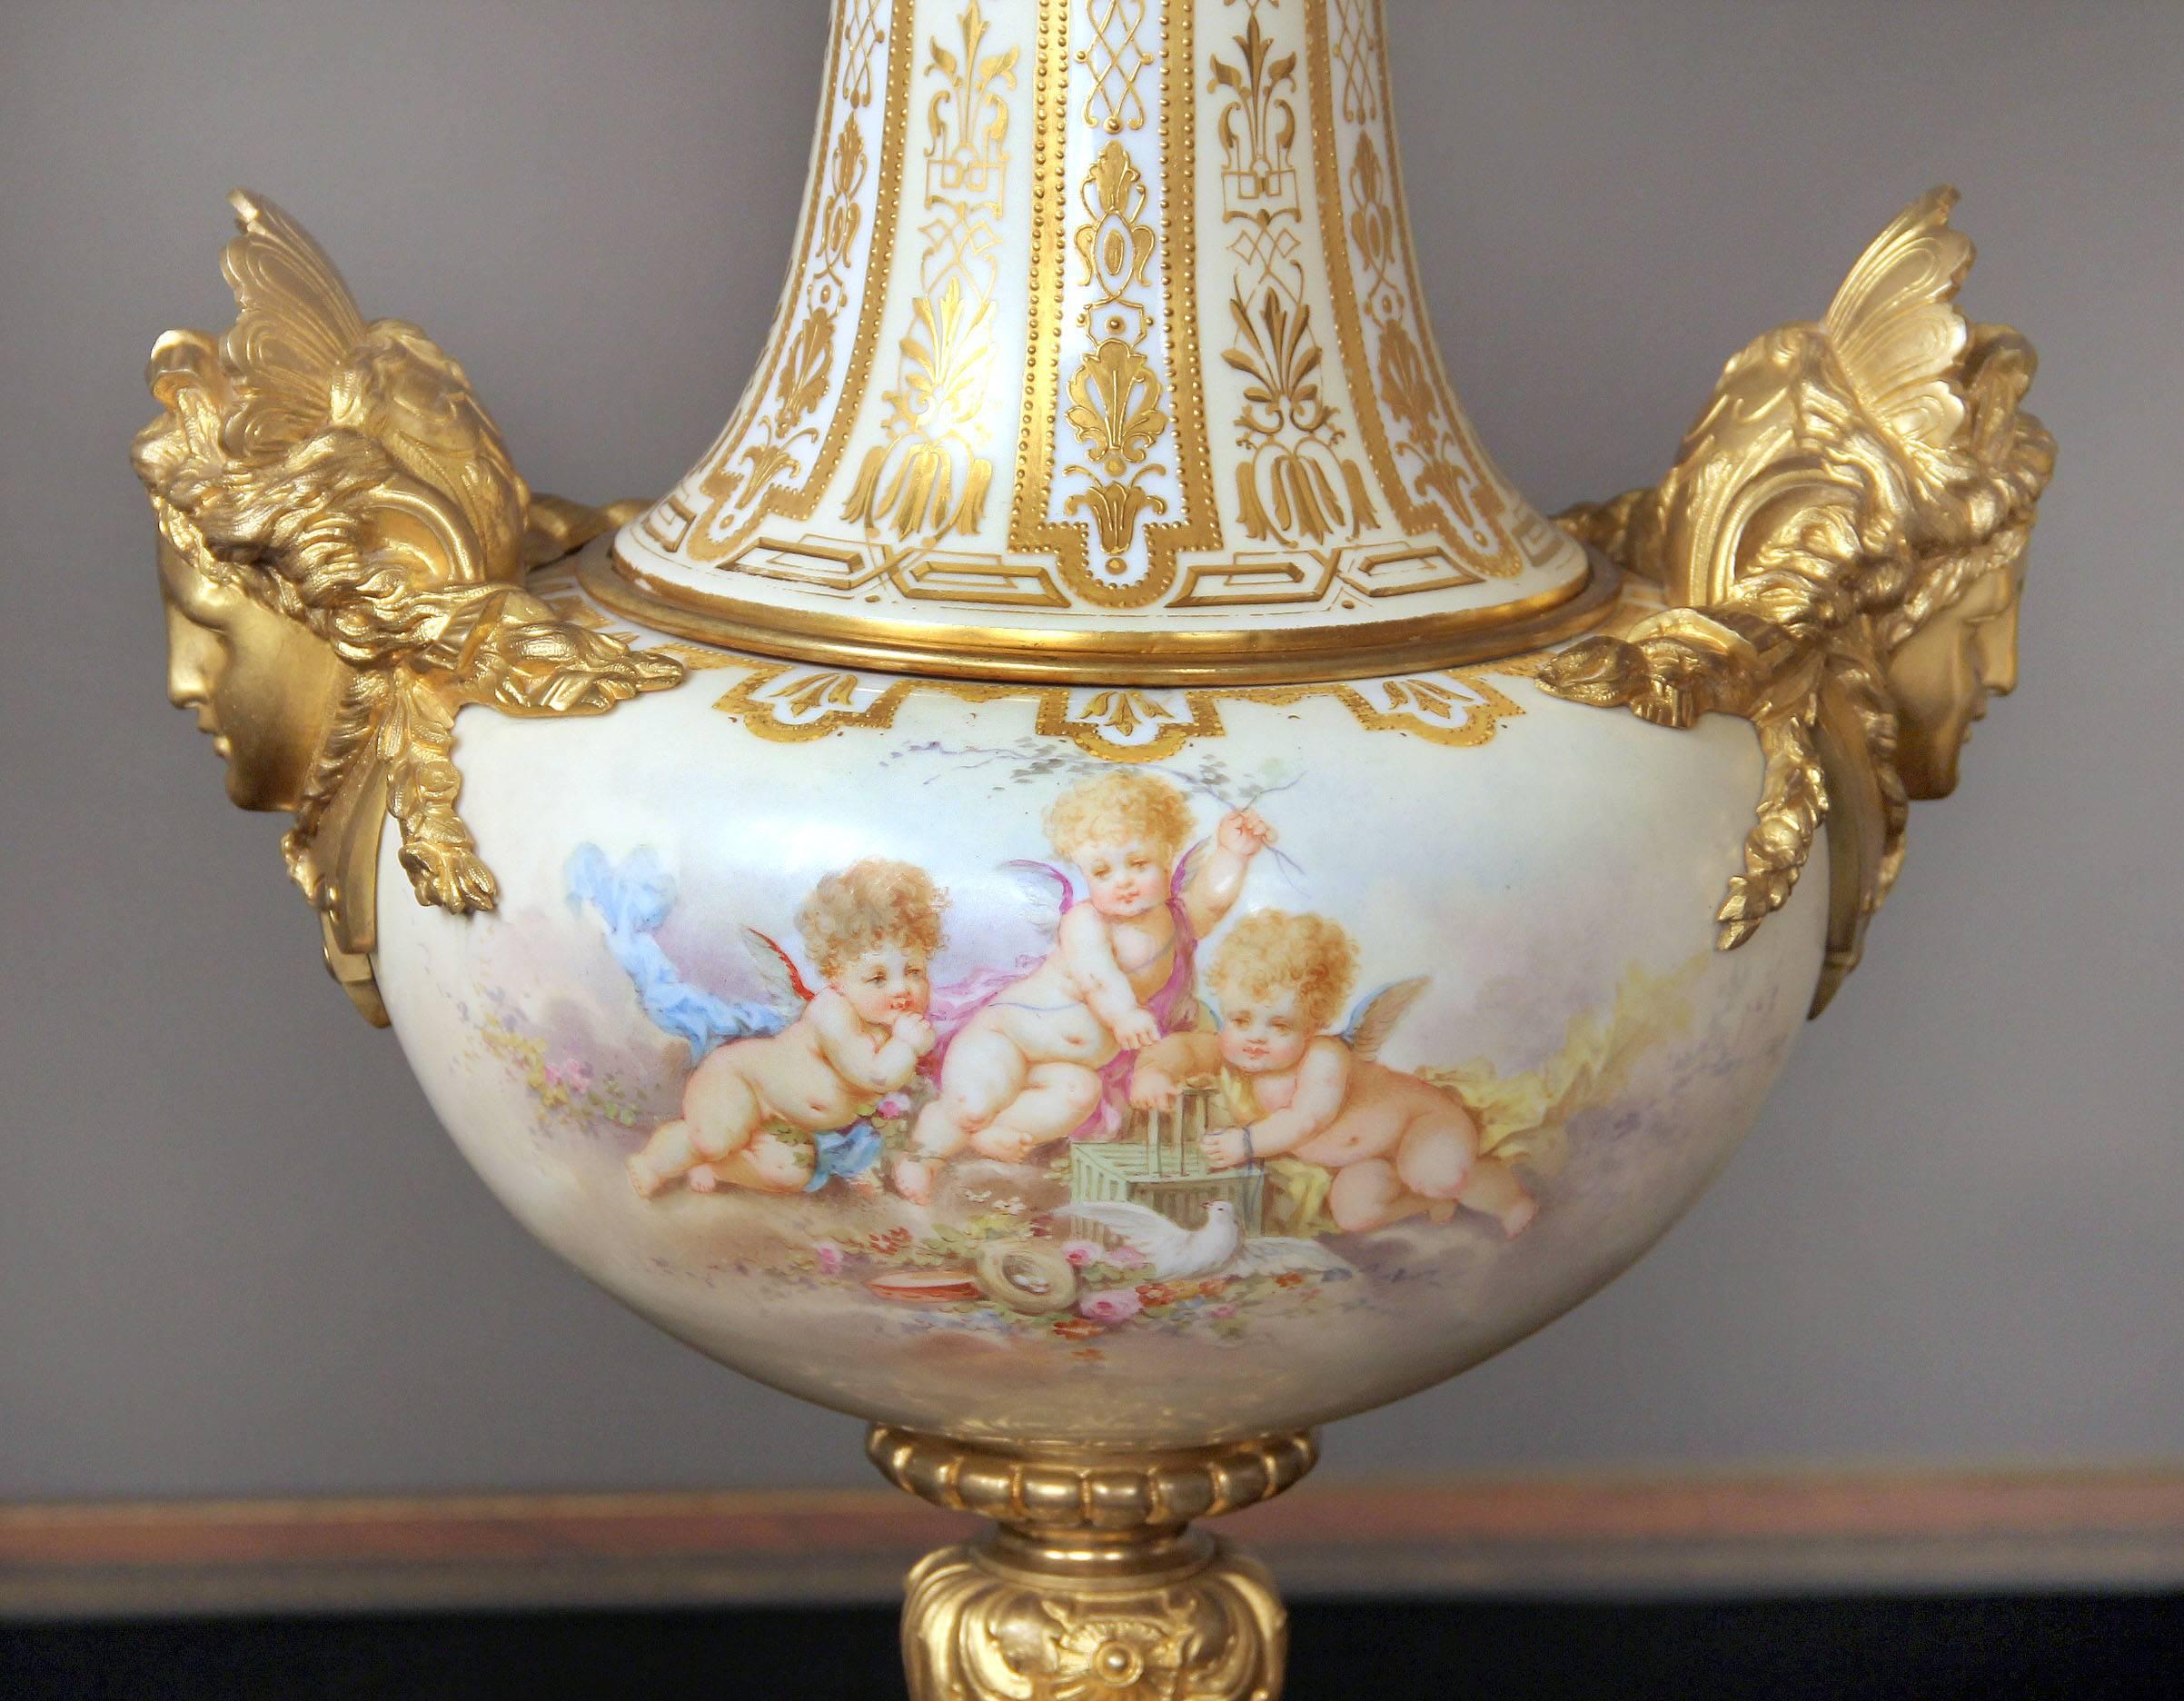 Une belle paire de vases de style Sèvres de la fin du 19e siècle en bronze doré et émail champlevé montés en blanc

Dessus en bronze doré au-dessus d'un long col avec des motifs dorés en relief. Les façades peintes présentent chacune des scènes